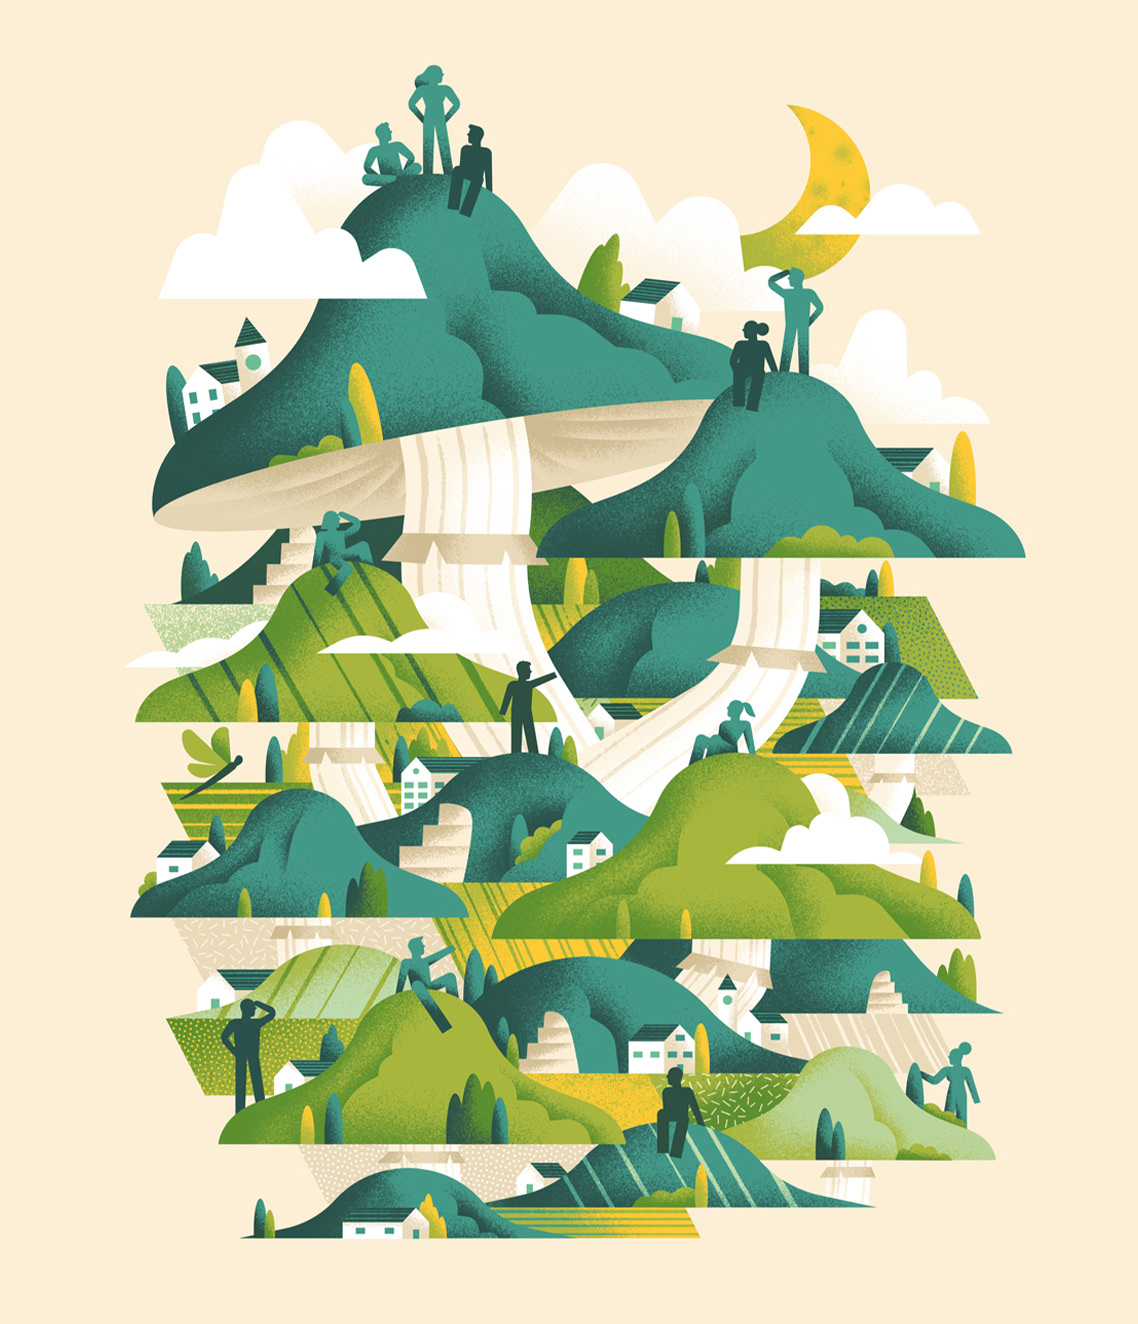 mushroom hills Nature Landscape film festival Film Festival Poster motion design Italy poster